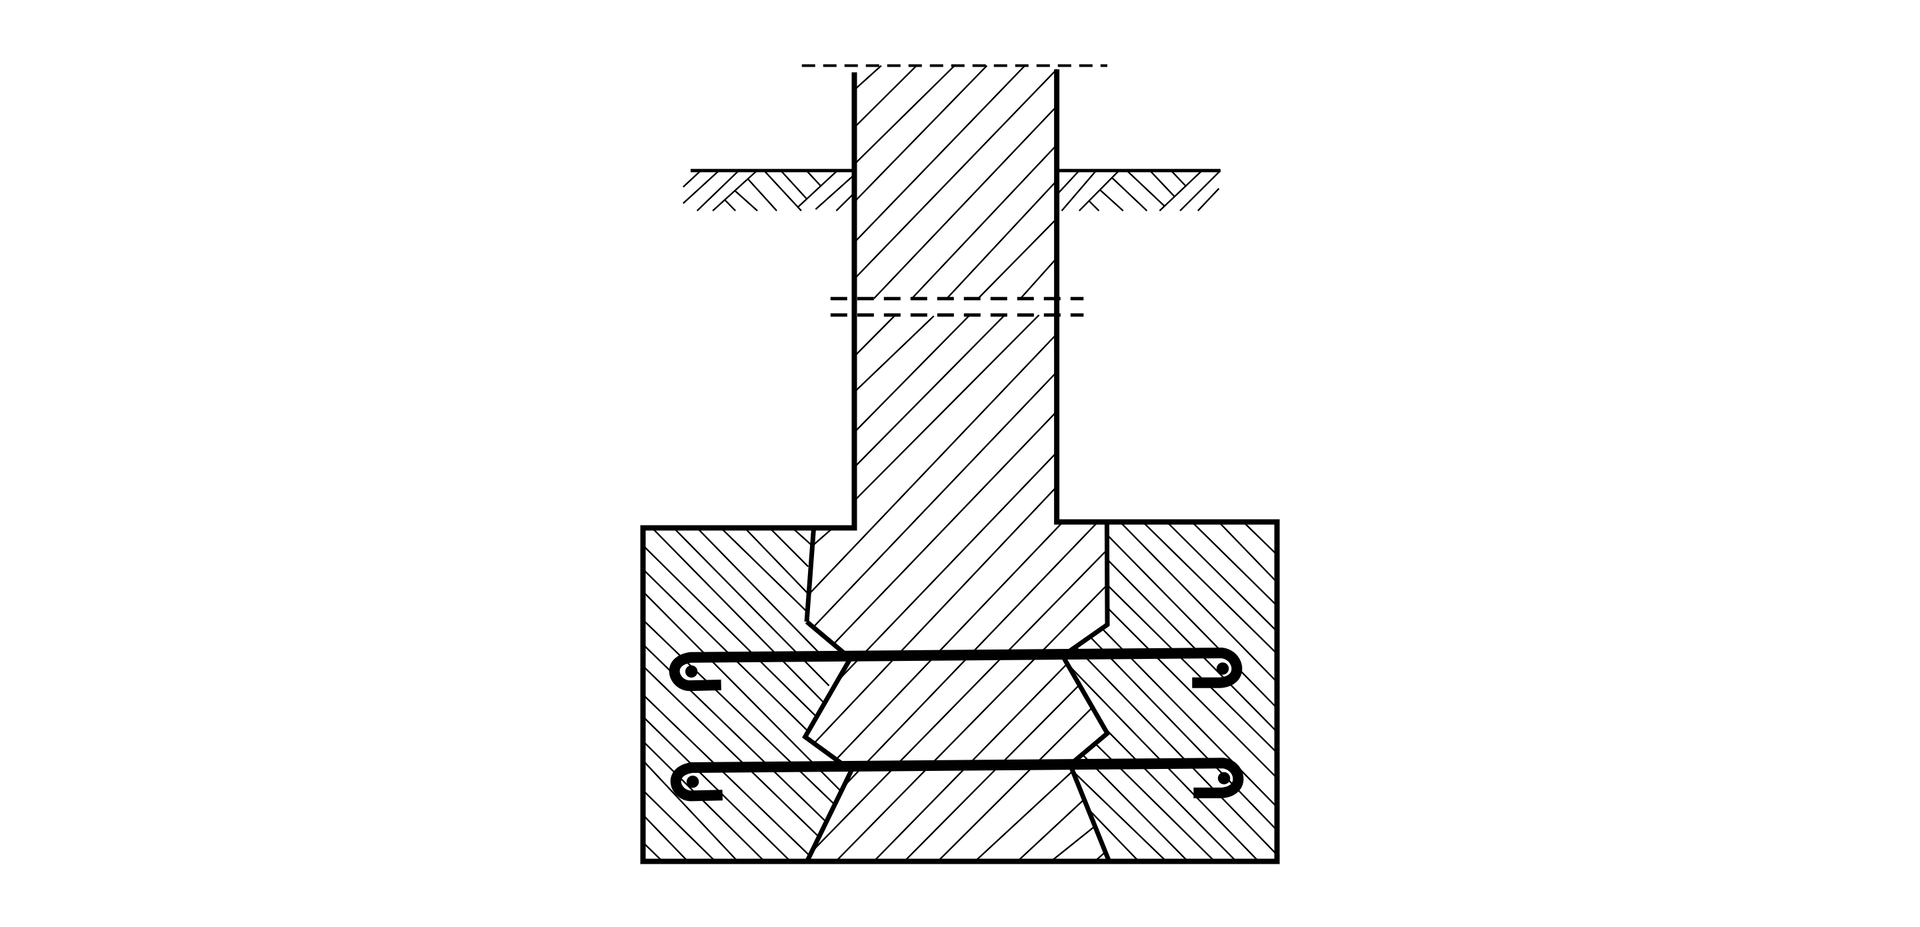 Ilustracja przedstawia poszerzenie ławy fundamentowej z cegły przez obmurowanie.